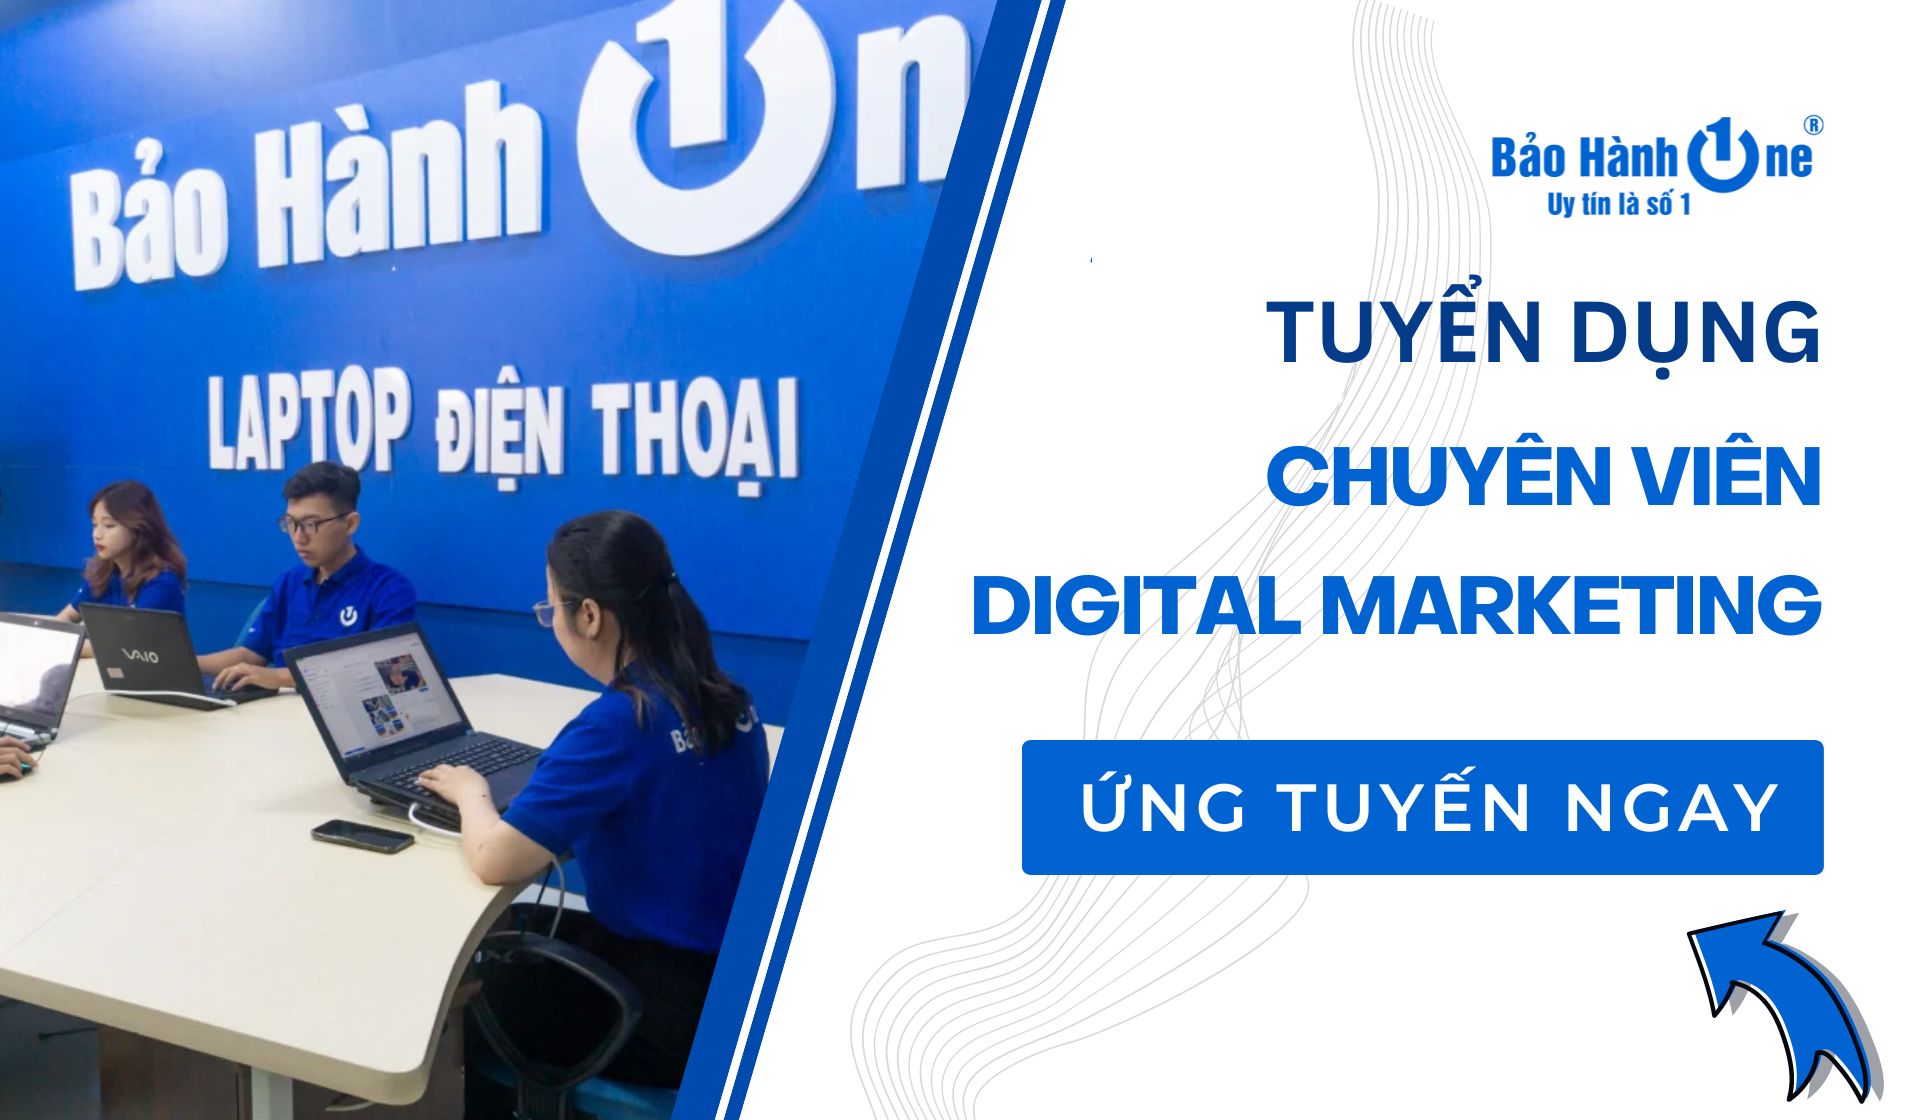 Tuyển dụng Chuyên Viên Digital Marketing - Quận Tân Phú, Hồ Chí Minh